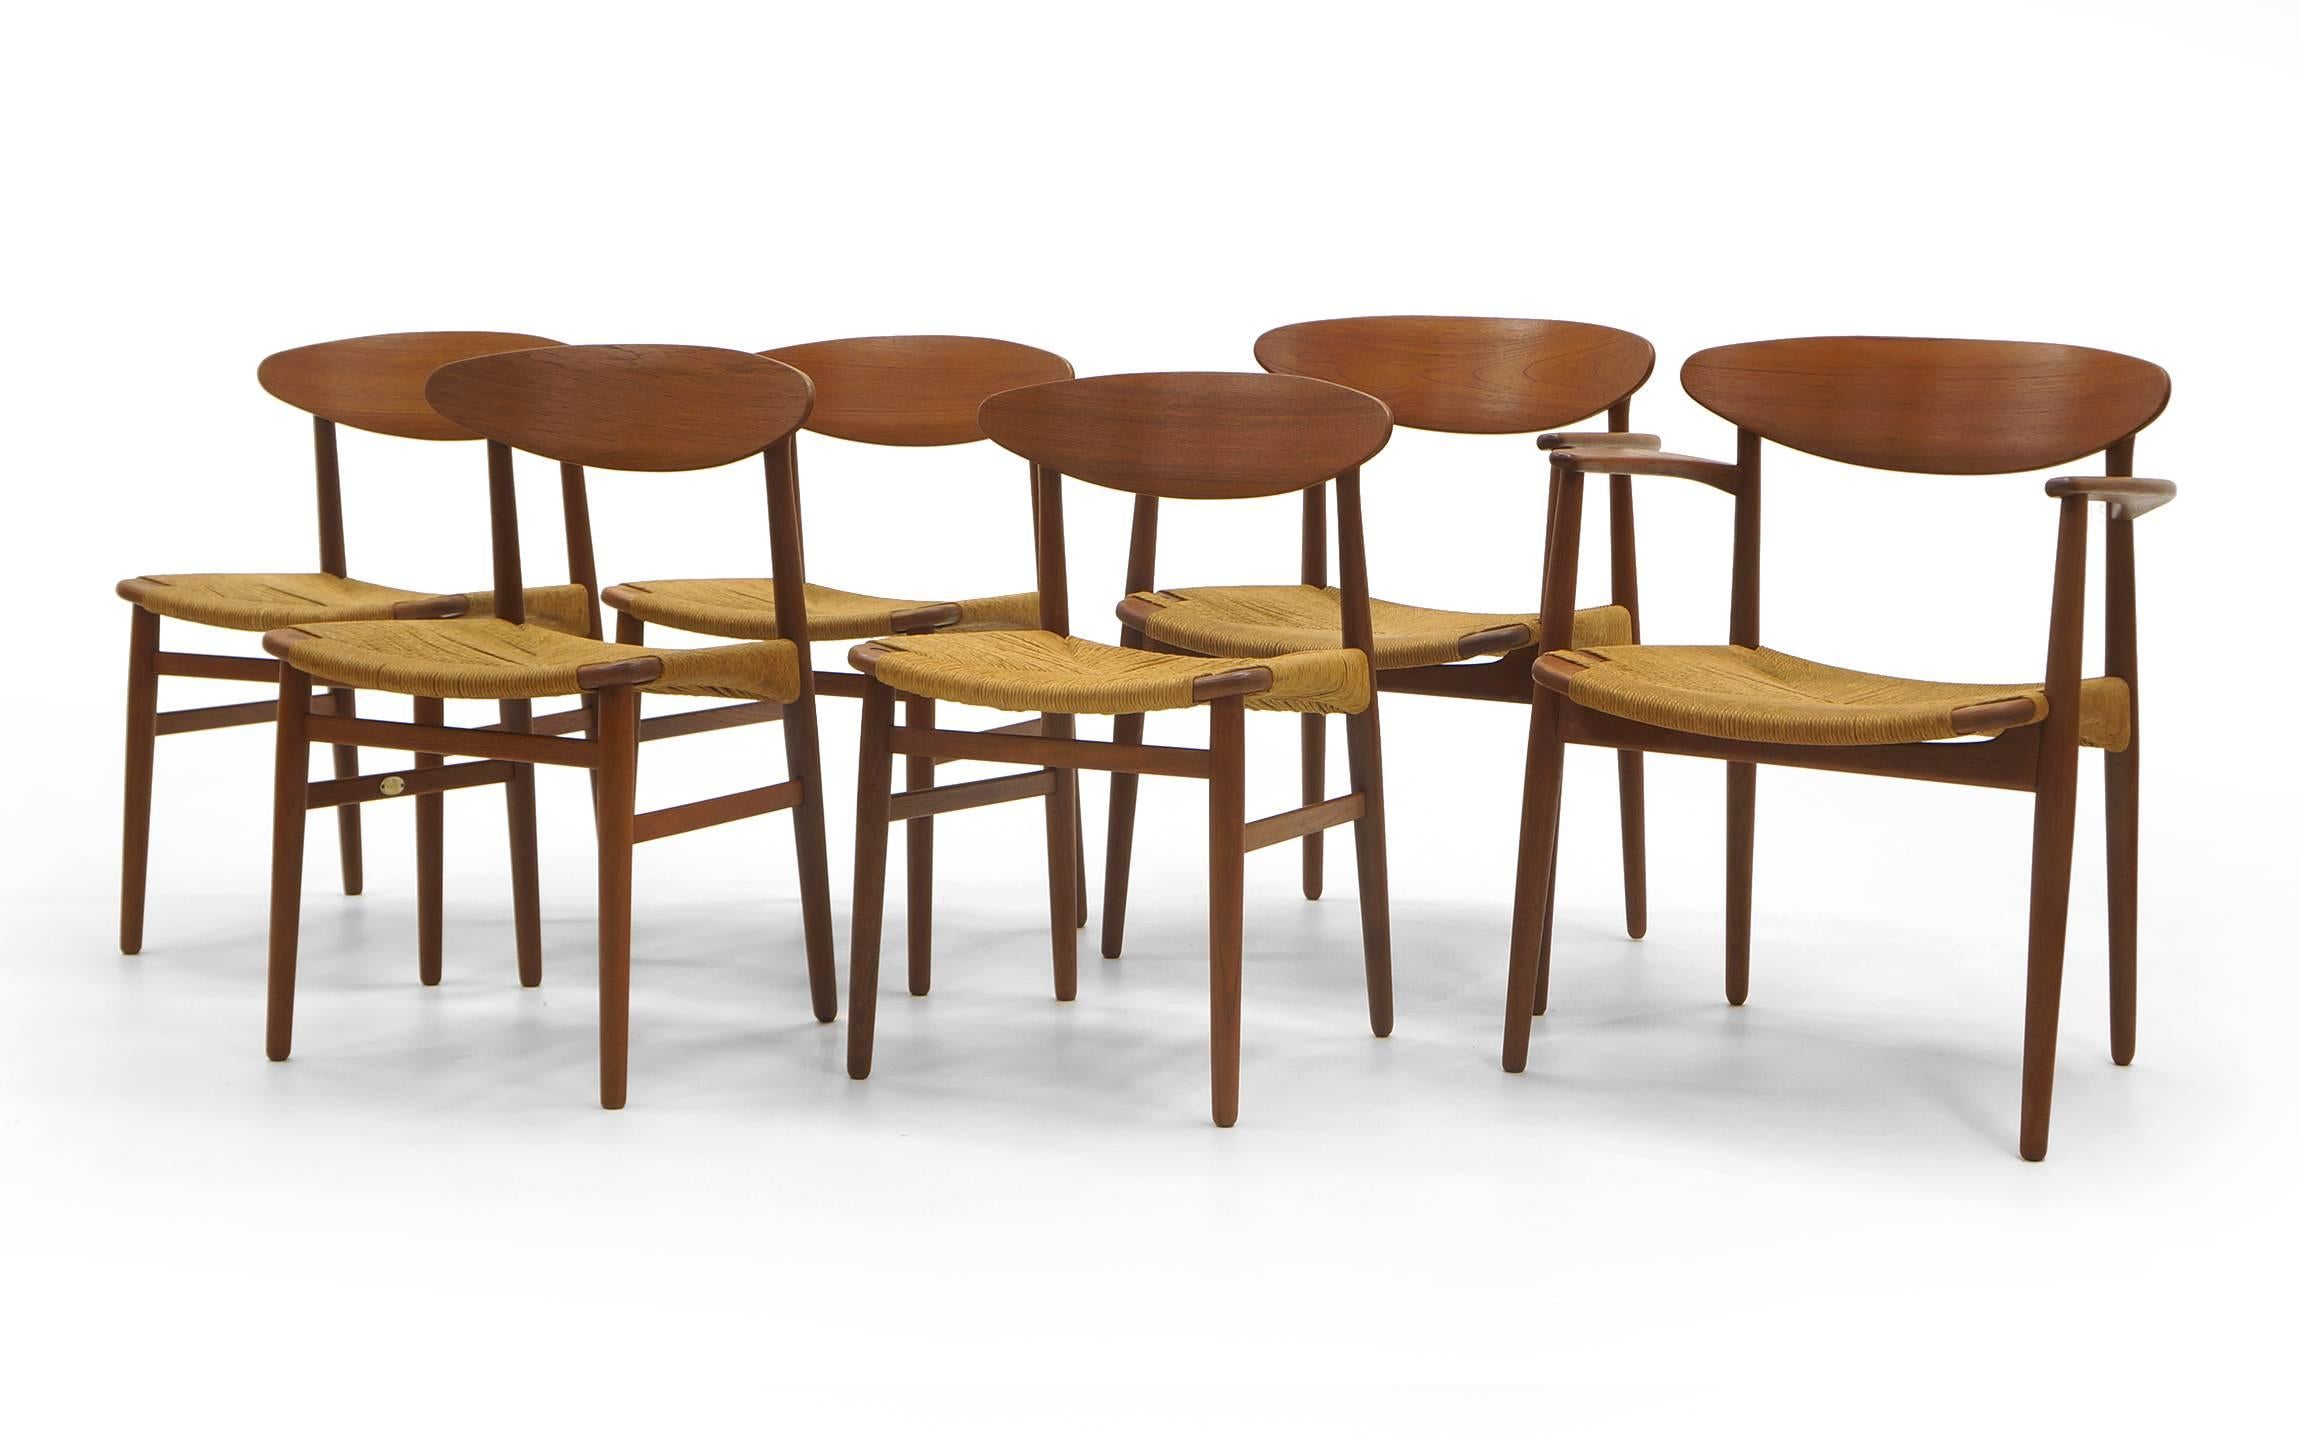 Set aus sechs Teakholz-Esszimmerstühlen mit Sitzflächen aus geflochtenem Grasseil, entworfen von Ejner Larsen und Aksel Madsen für die Naestved Mobelfabrik. Zwei Sessel und vier Beistellstühle. Die Rahmen wurden fachmännisch restauriert und neu